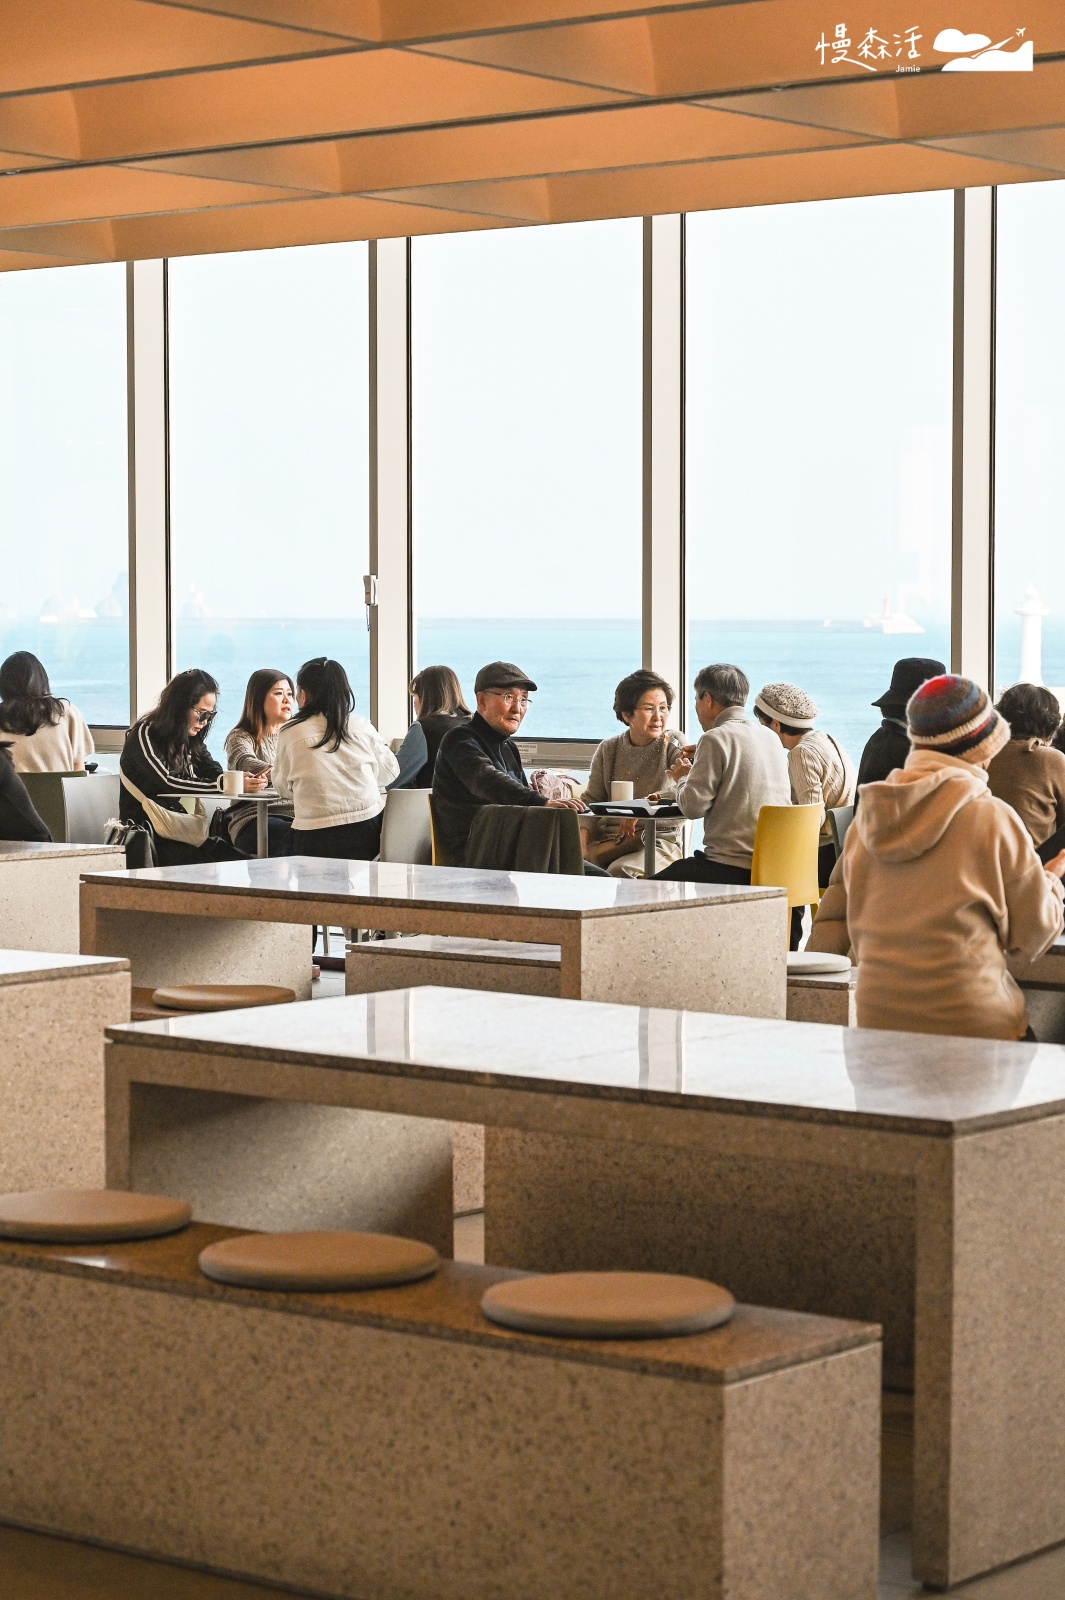 韓國釜山「P.ARK」複合式文化園區 咖啡廳室內三樓座位區